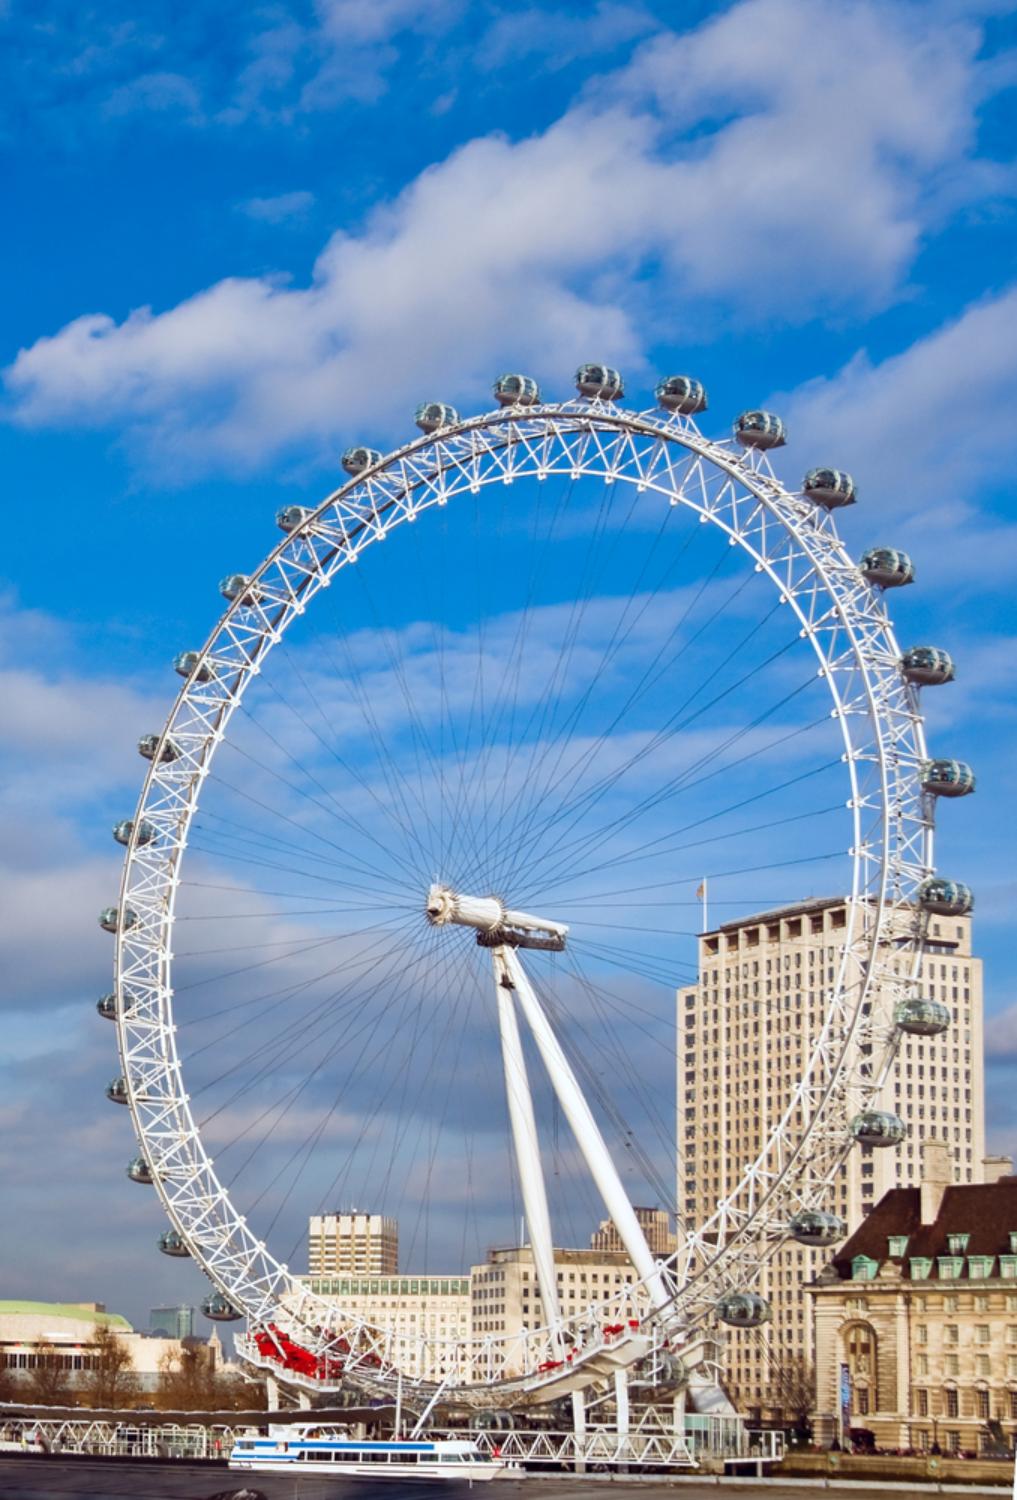 Billets London Eye avec visite de la ville et croisière sur la Tamise à Londres